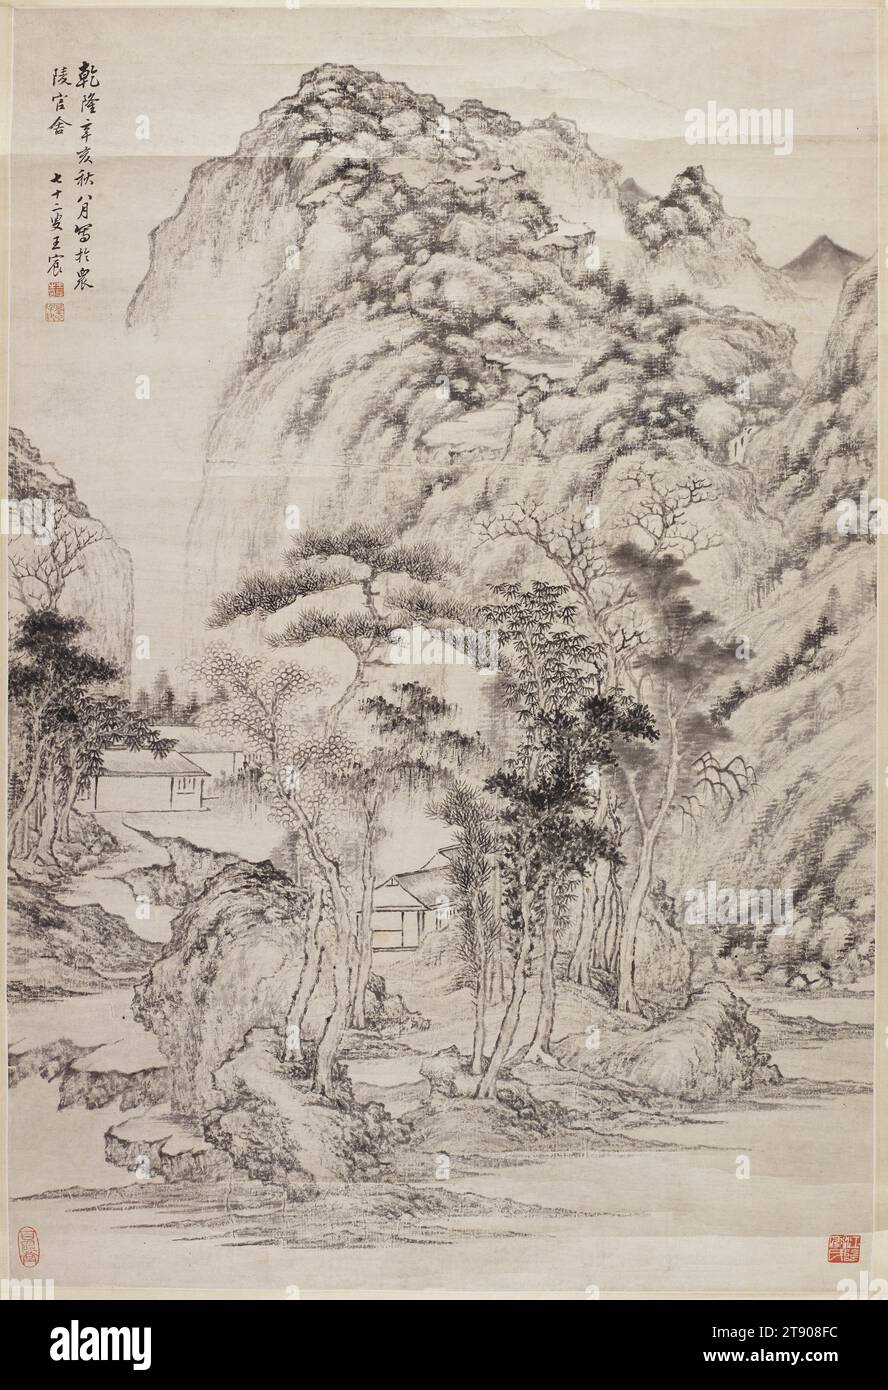 Landscape in the Orthodox Manier, 1791, Wang Chen, 1720 - 1797, 33 13/16 x 22 13/16 Zoll (85,88 x 57,94 cm) (Bild)39 3/4 x 28 5/8 Zoll (100,97 x 72,71 cm) (Montierung), Tinte auf Papier, China, 18. Jahrhundert, die Inschrift oben links in dieser orthodoxen Tintenlandschaft steht, gemalt in der offiziellen Residenz in Zhengling im achten Herbst des Xin-Hai-Jahres der Qianlong-Herrschaft (1791). Signiert: Der 72-jährige Wang Chen. Es gibt zwei Künstlersiegel und zwei Sammlersiegel, die die Li-Familie von Jiang Yin in der Provinz Jiangsu identifizieren Stockfoto